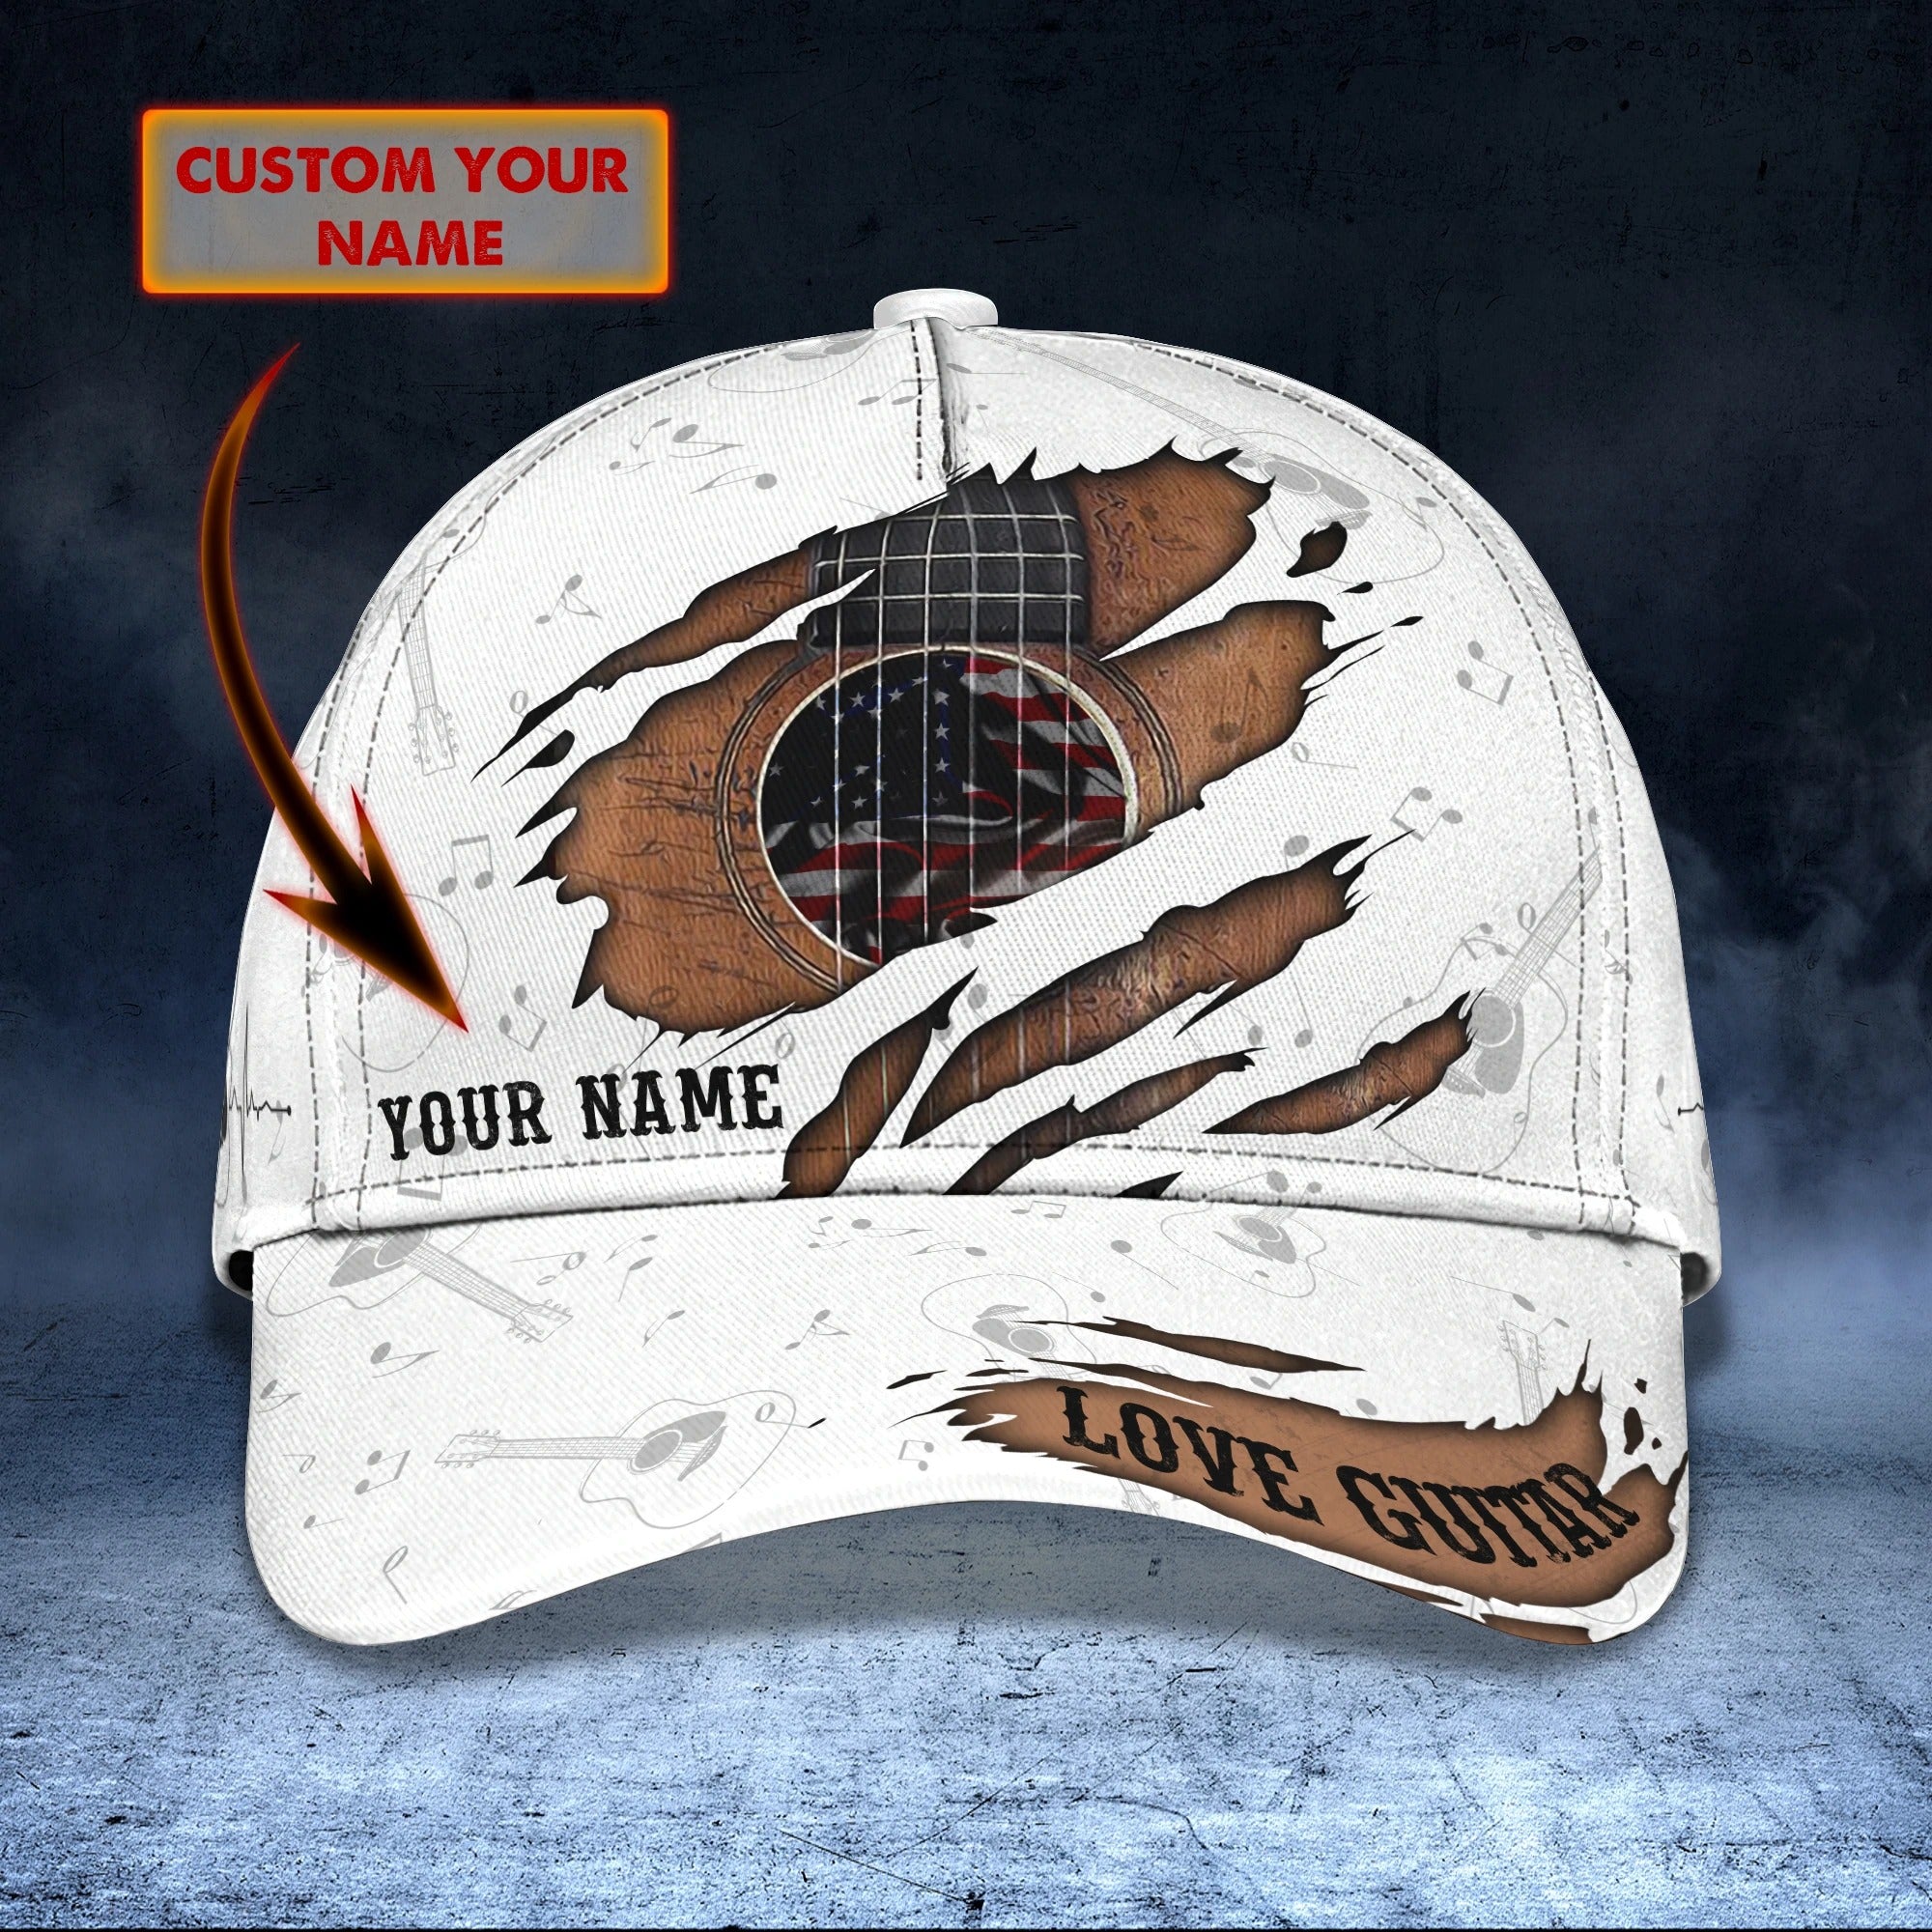 Custom With Name Baseball Full Print Guitar Cap For Men And Woman/ Birthday Gift For Guitar Lovers/ Guitar Cap Hat